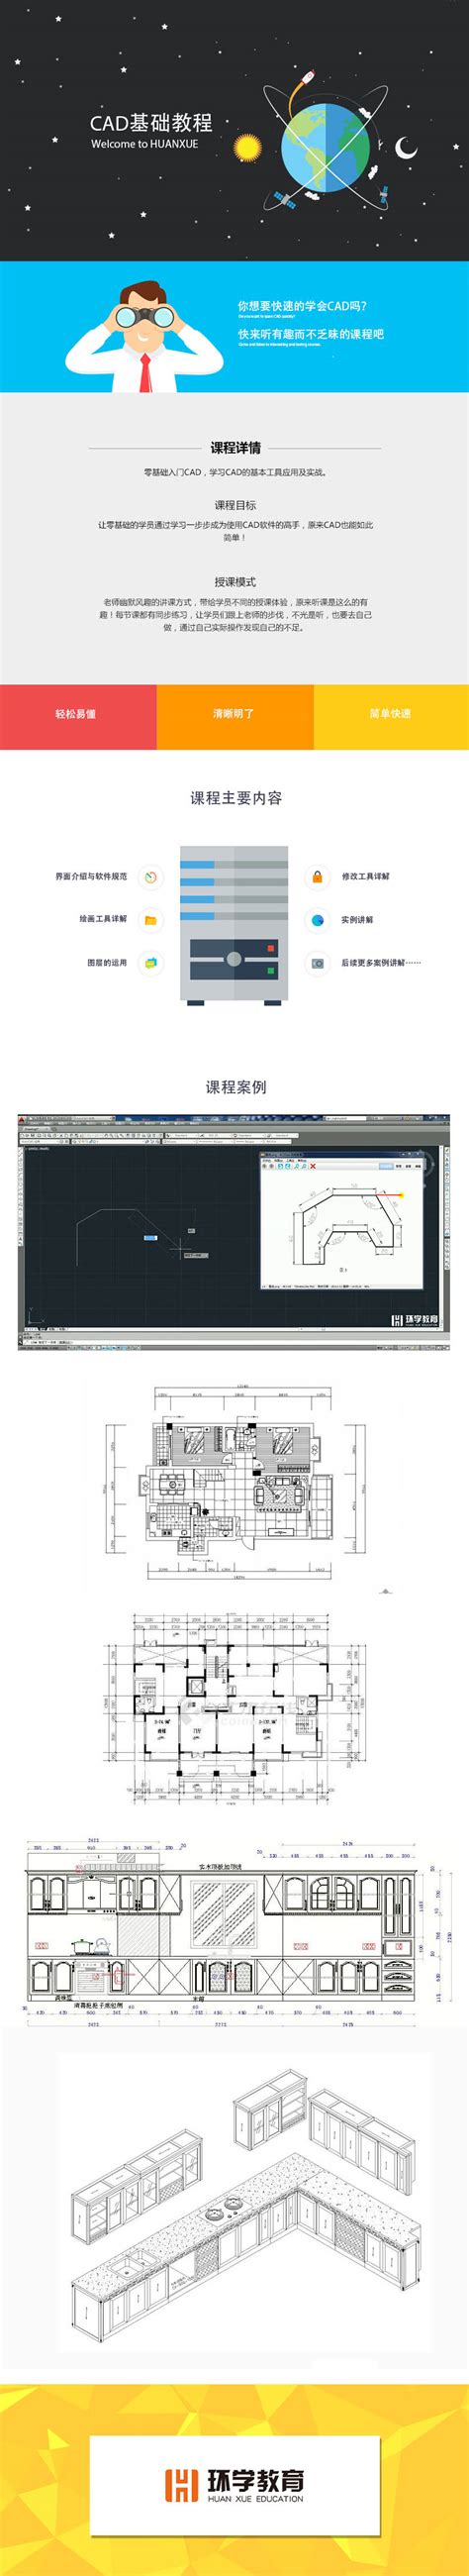 室内设计课程 - CAD施工图（零基础必学）-学习视频教程-腾讯课堂